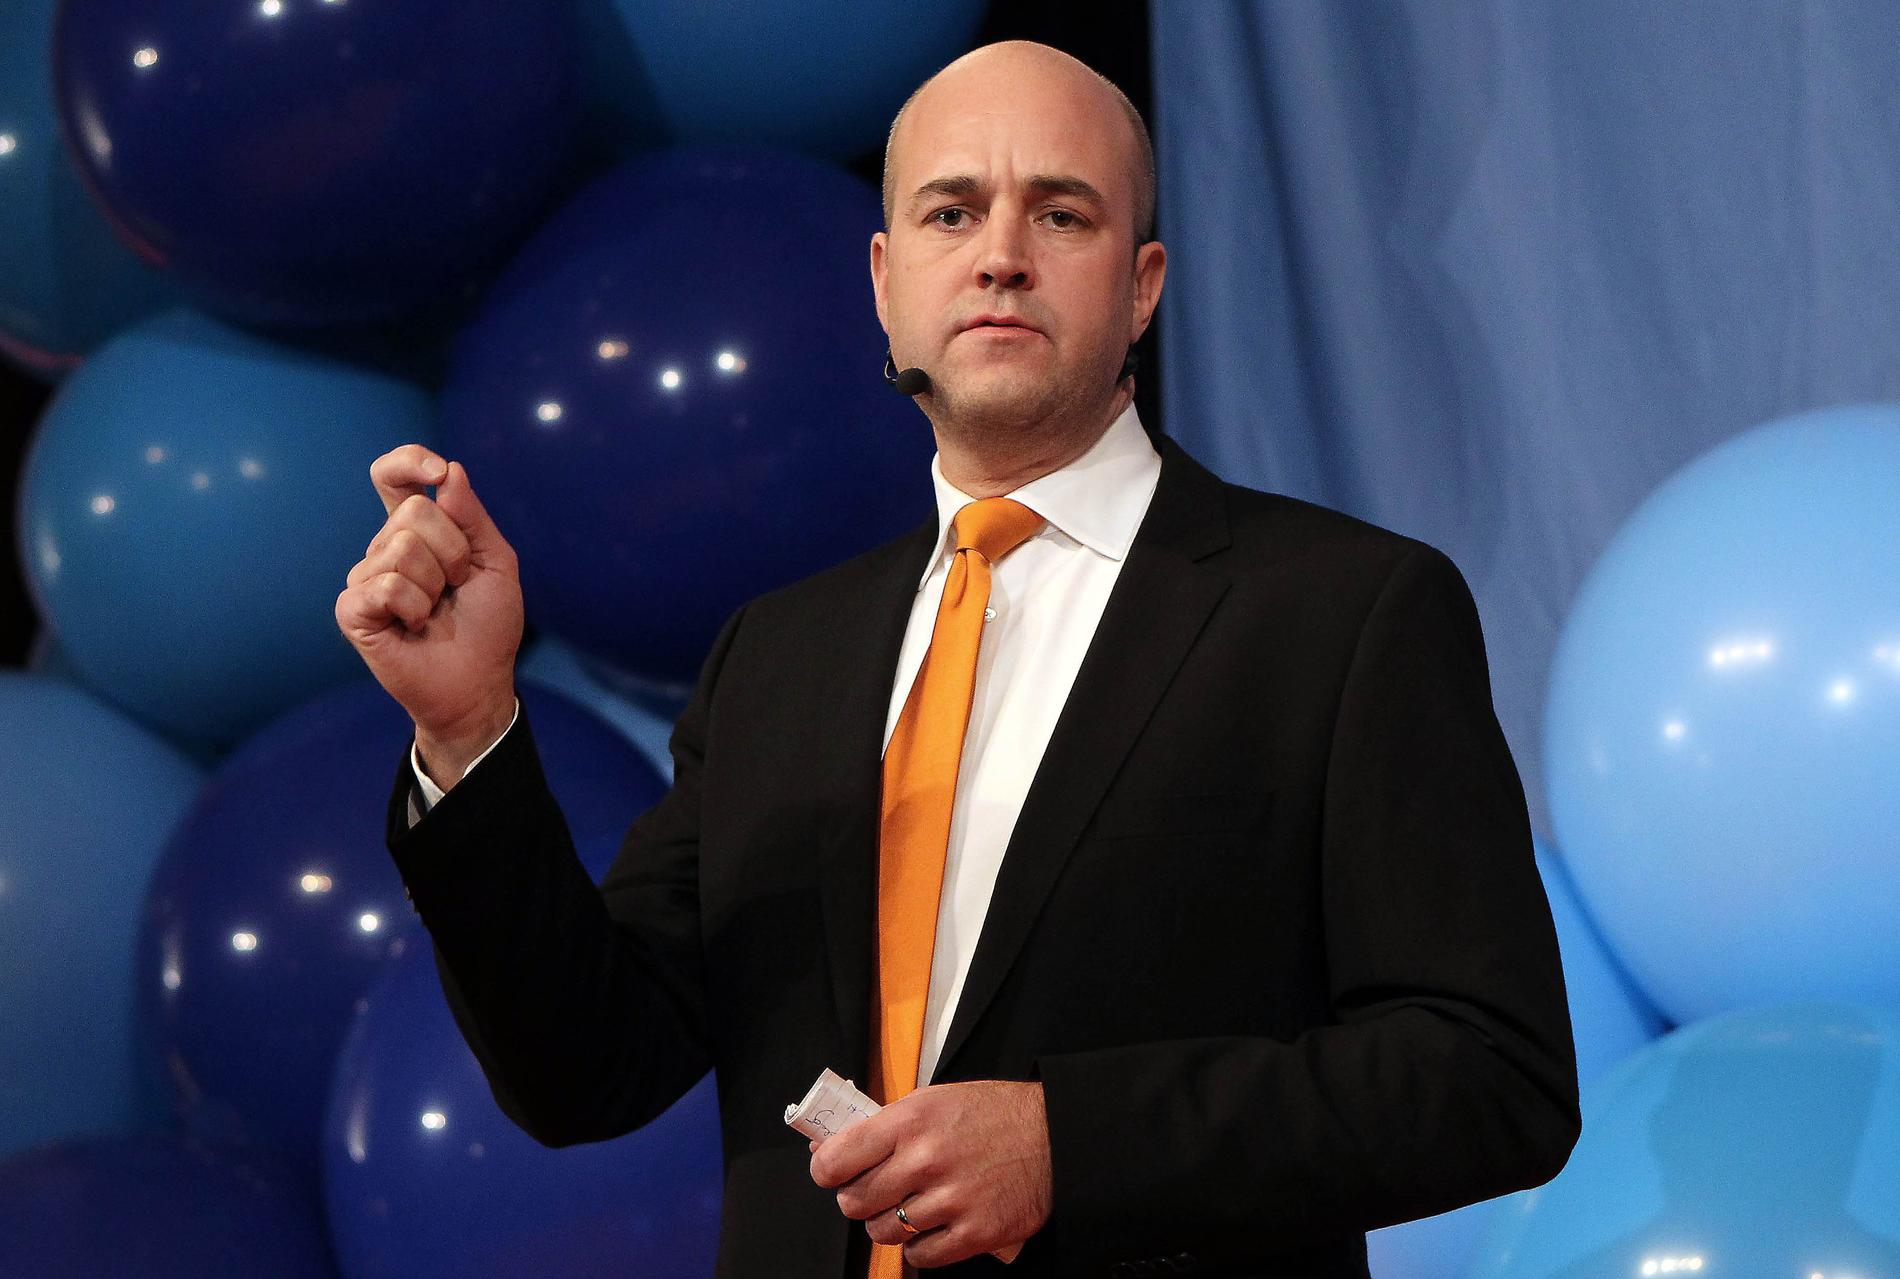 Det svenska välfärdsbygget raserades i rask takt med Fredrik Reinfeldt som statsminister. Resultatet har varit slående under coronapandemin.